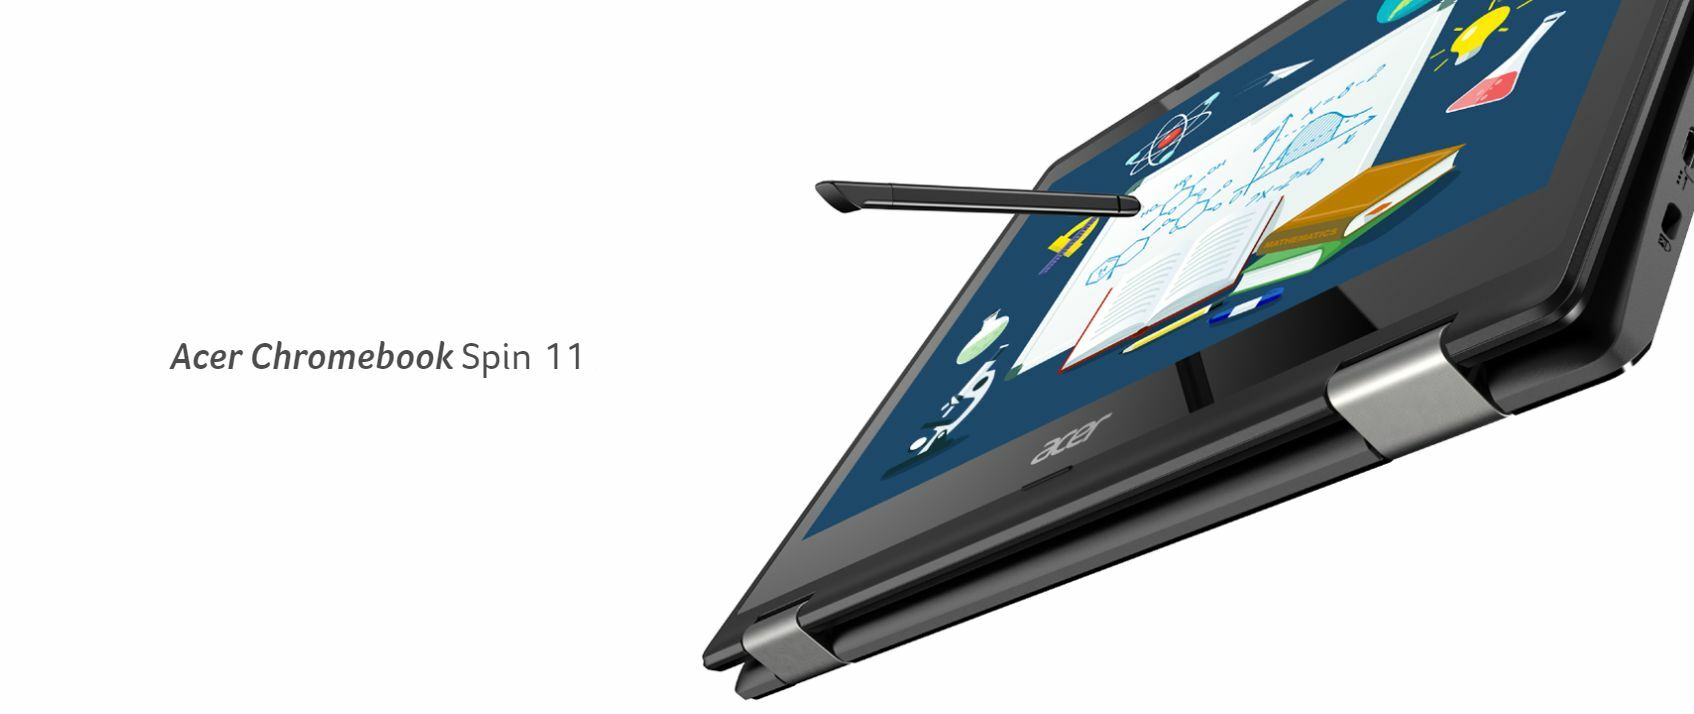 สรุปสเปค รีวิว Acer Chromebook Spin 11 แล็ปท็อปพลังทนทานสูง